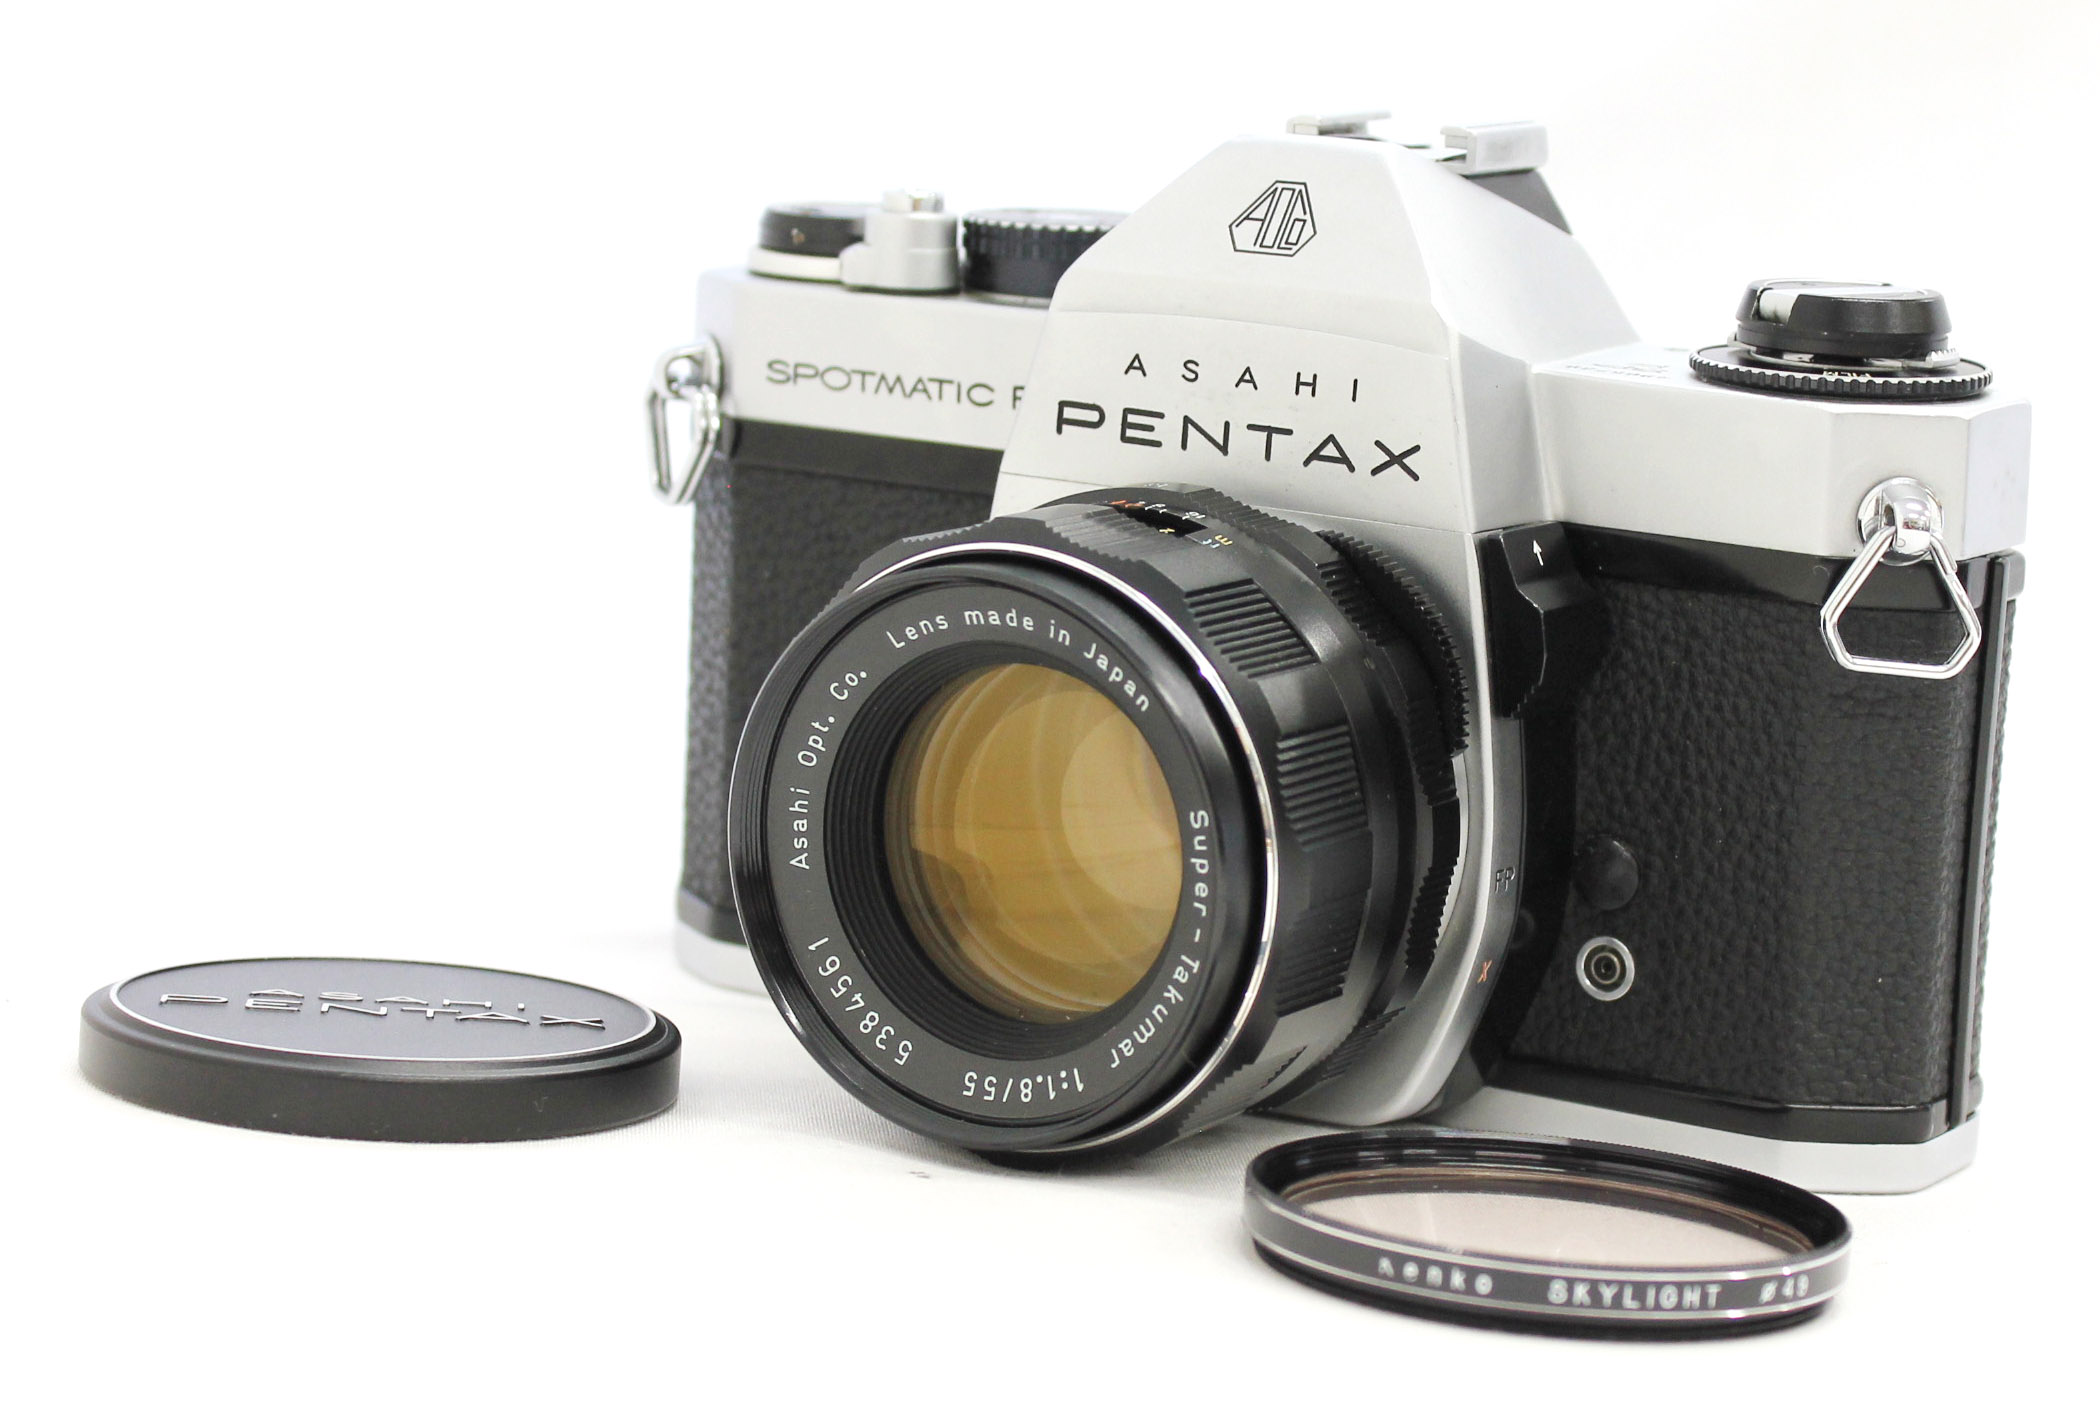 Japan Used Camera Shop | [Exc+++++] Asahi Pentax Spotmatic F SPF Camera w/ Super Takumar 55mm F/1.8 from Japan